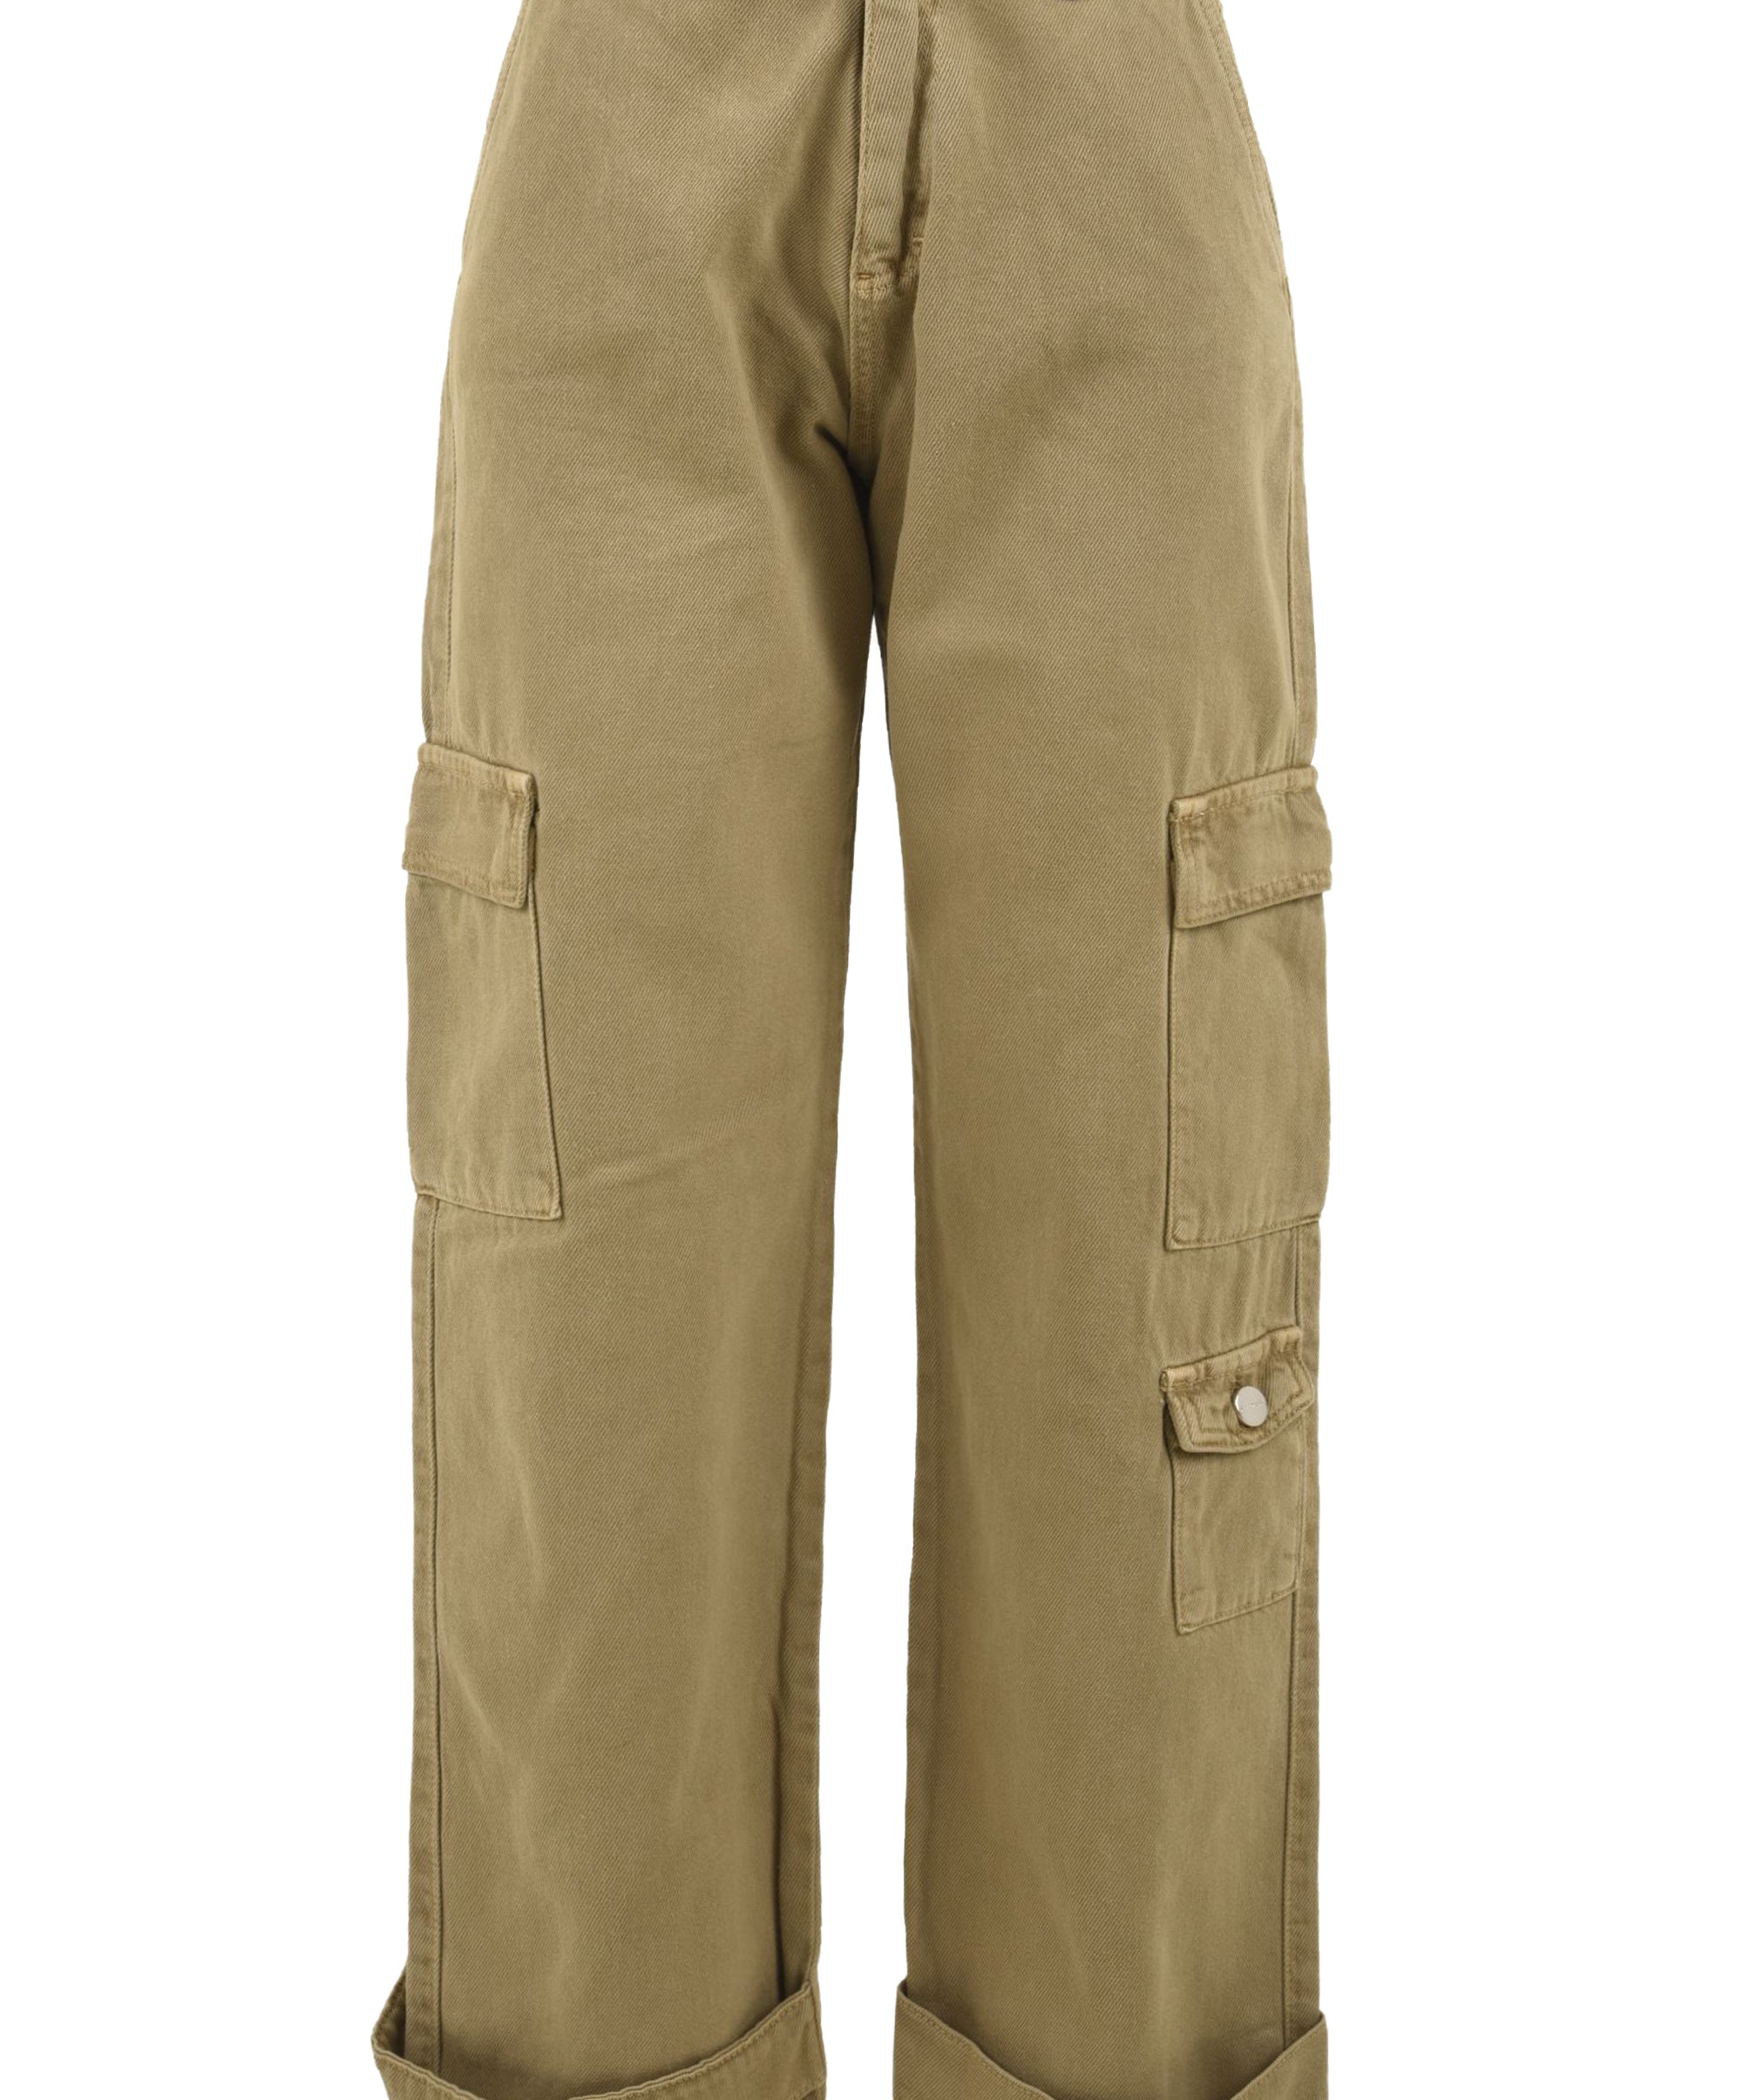 Pantalone donna con tasche cargo laterali in cotone